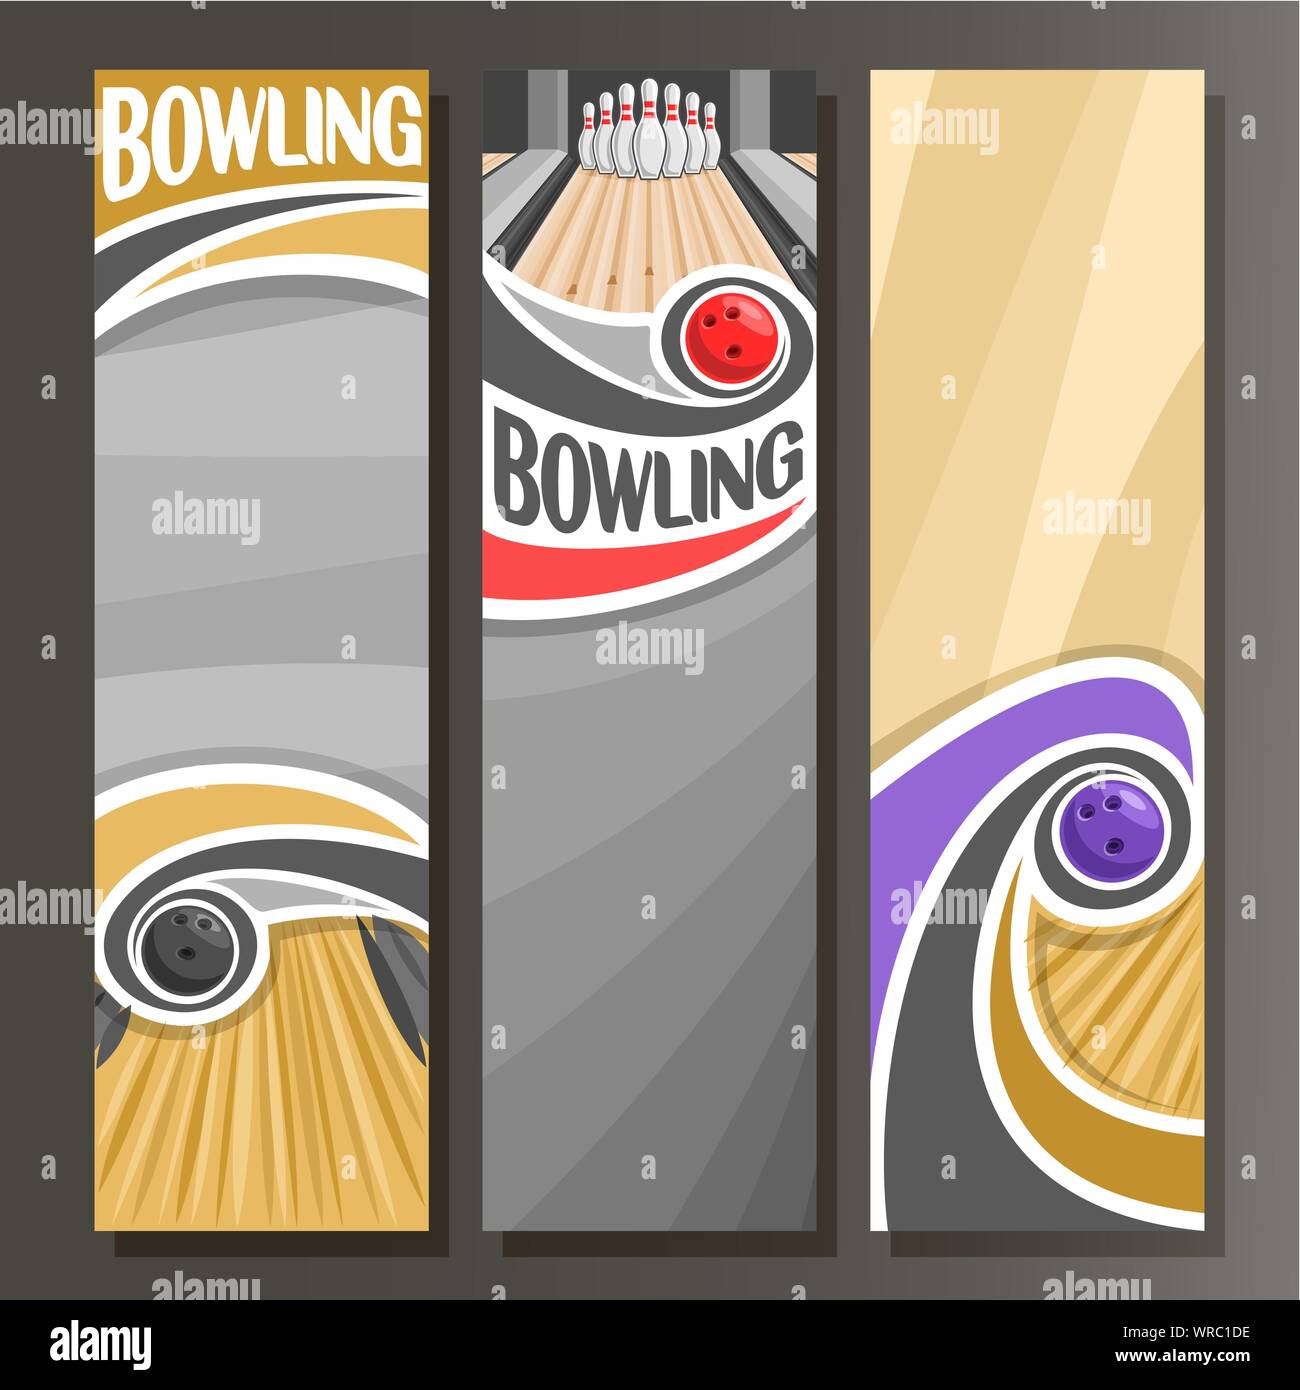 Vektor vertikale Banner für Bowling: 3 cartoon Vorlagen für Text auf Bowling Thema, Ball werfen in zehn Pins auf der Gasse auf grauen Hintergrund. Stock Vektor